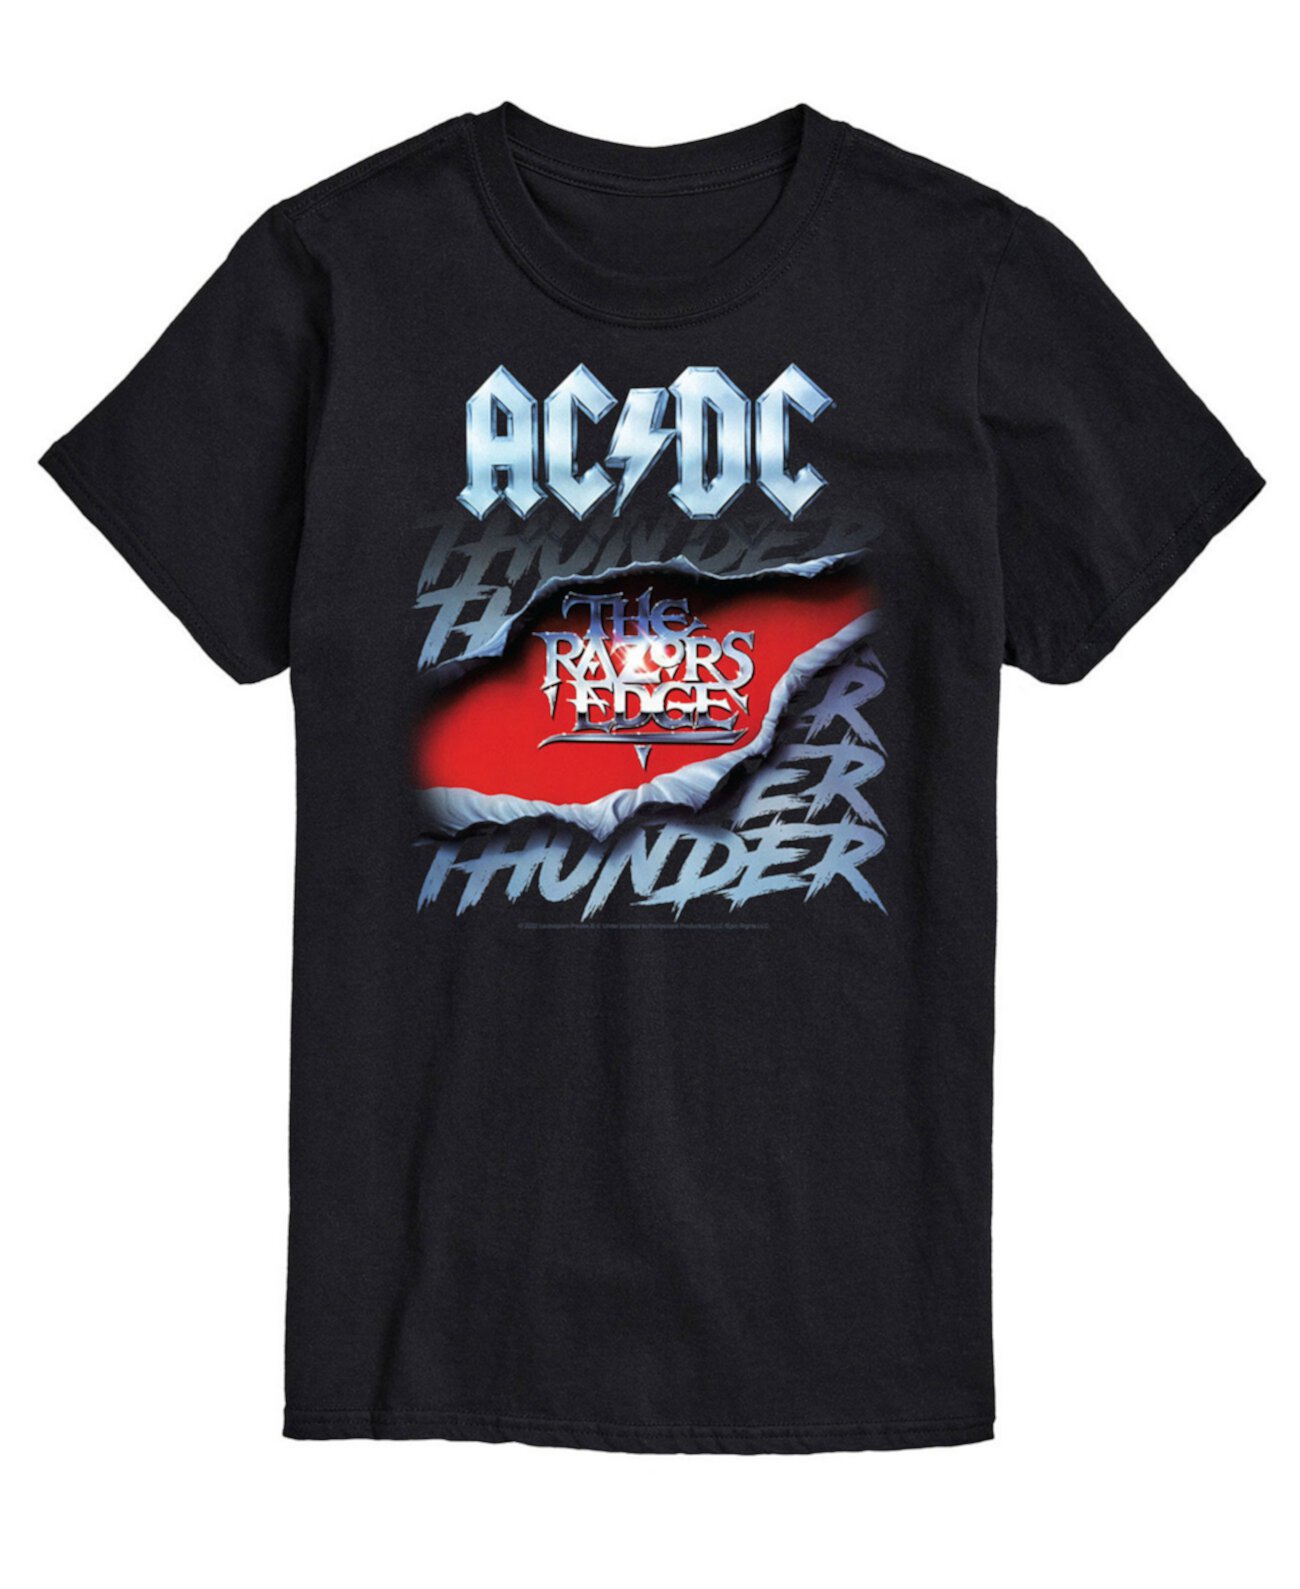 Мужская футболка ACDC Thunder AIRWAVES